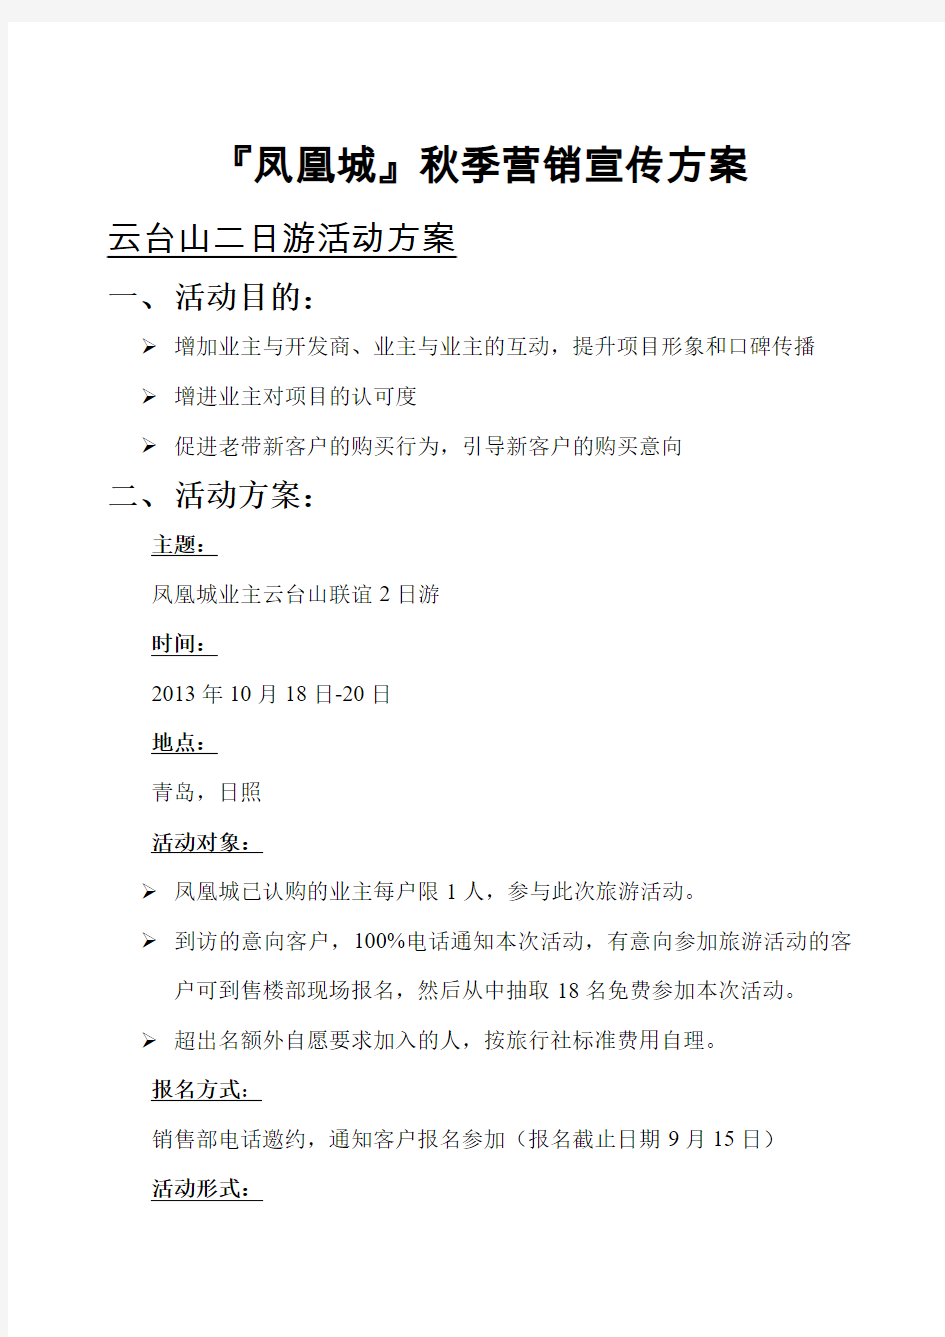 凤凰城暑期云台山二日游活动方案——补充方案